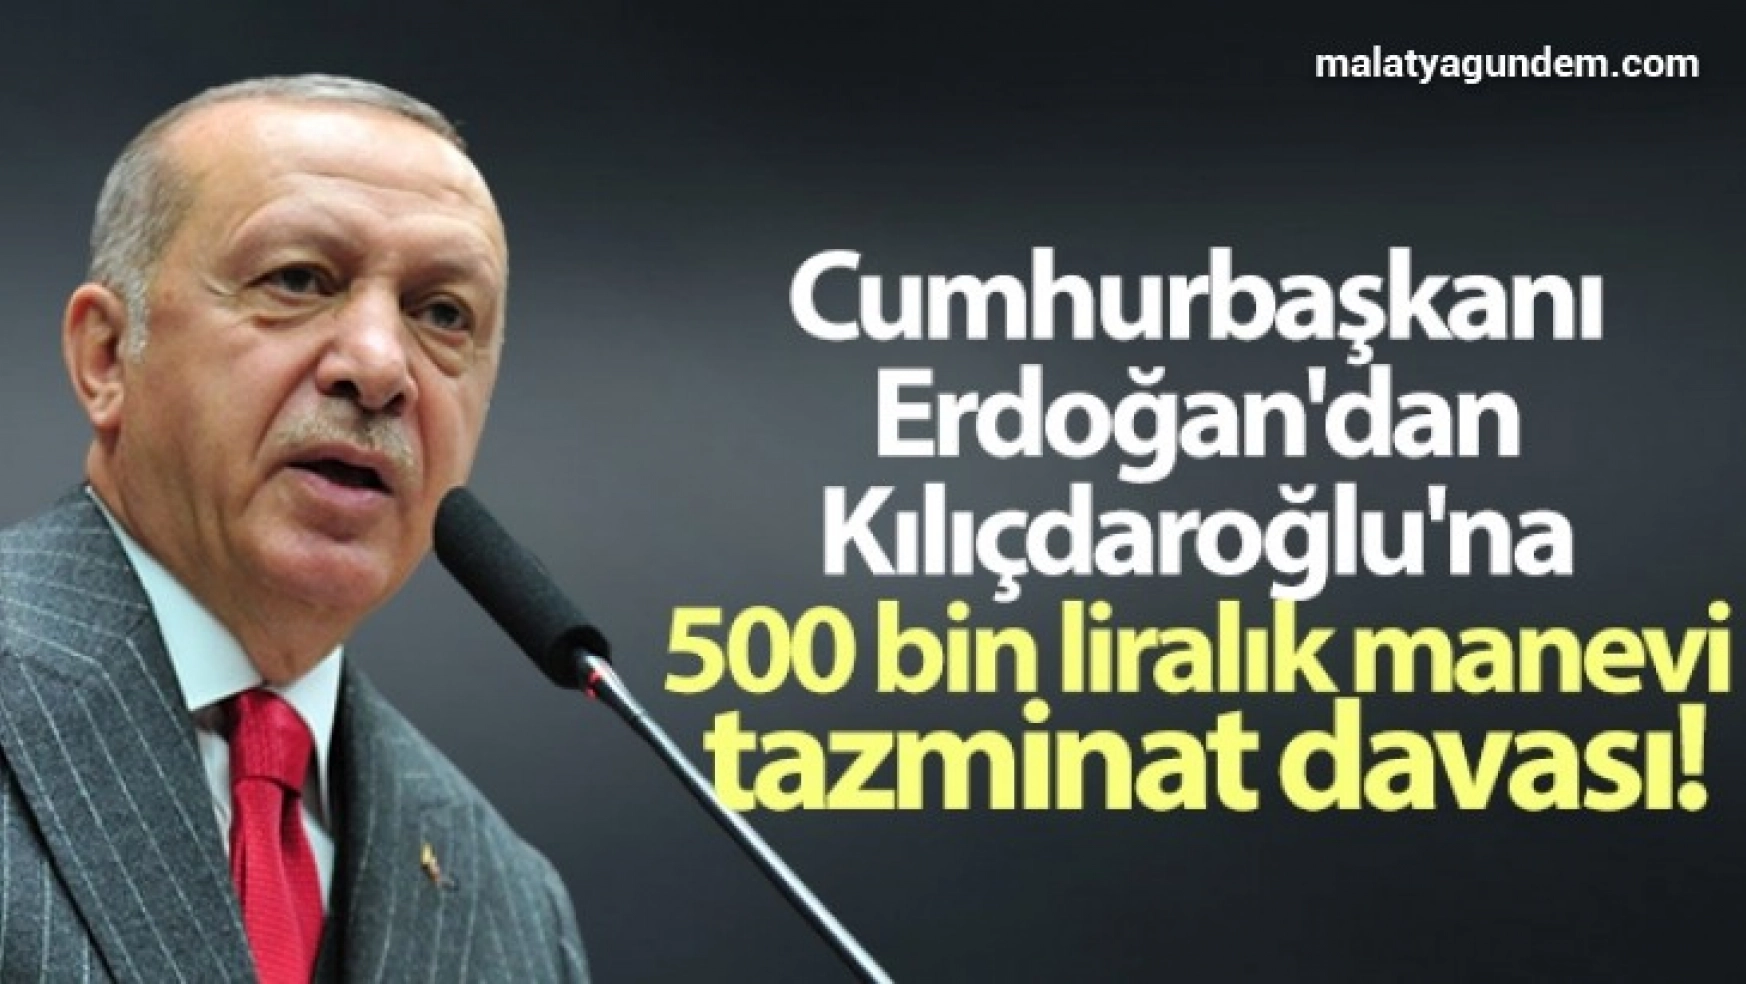 Cumhurbaşkanı Erdoğan'dan Kılıçdaroğlu'na 500 bin liralık manevi tazminat davası